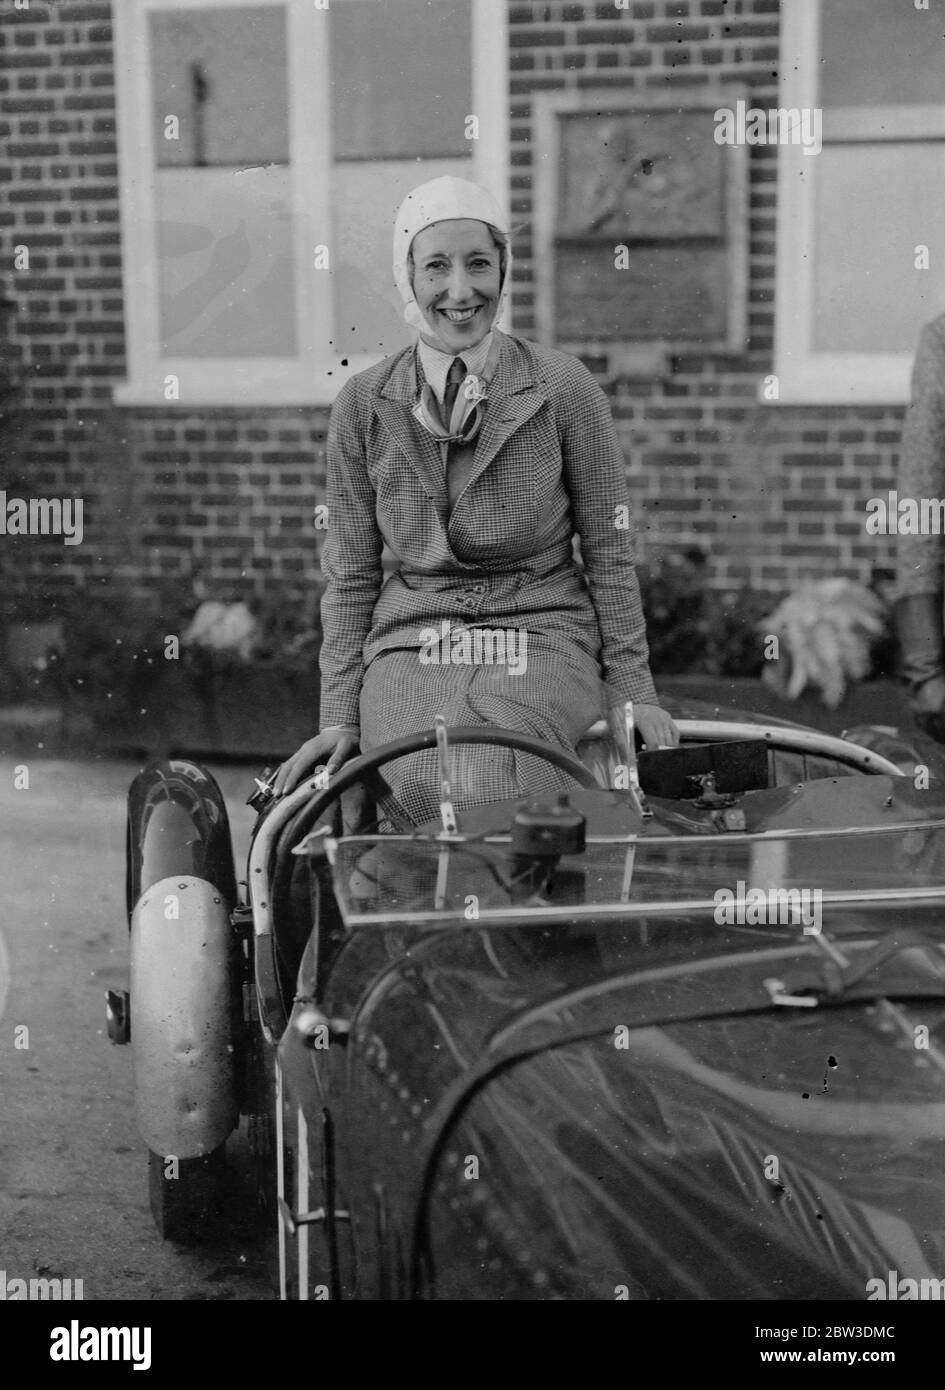 Gewinner des Frauen-Berg-Handicap in Brooklands . Frau P Oxenden nach ihrem Sieg. 19. Oktober 1935 Stockfoto